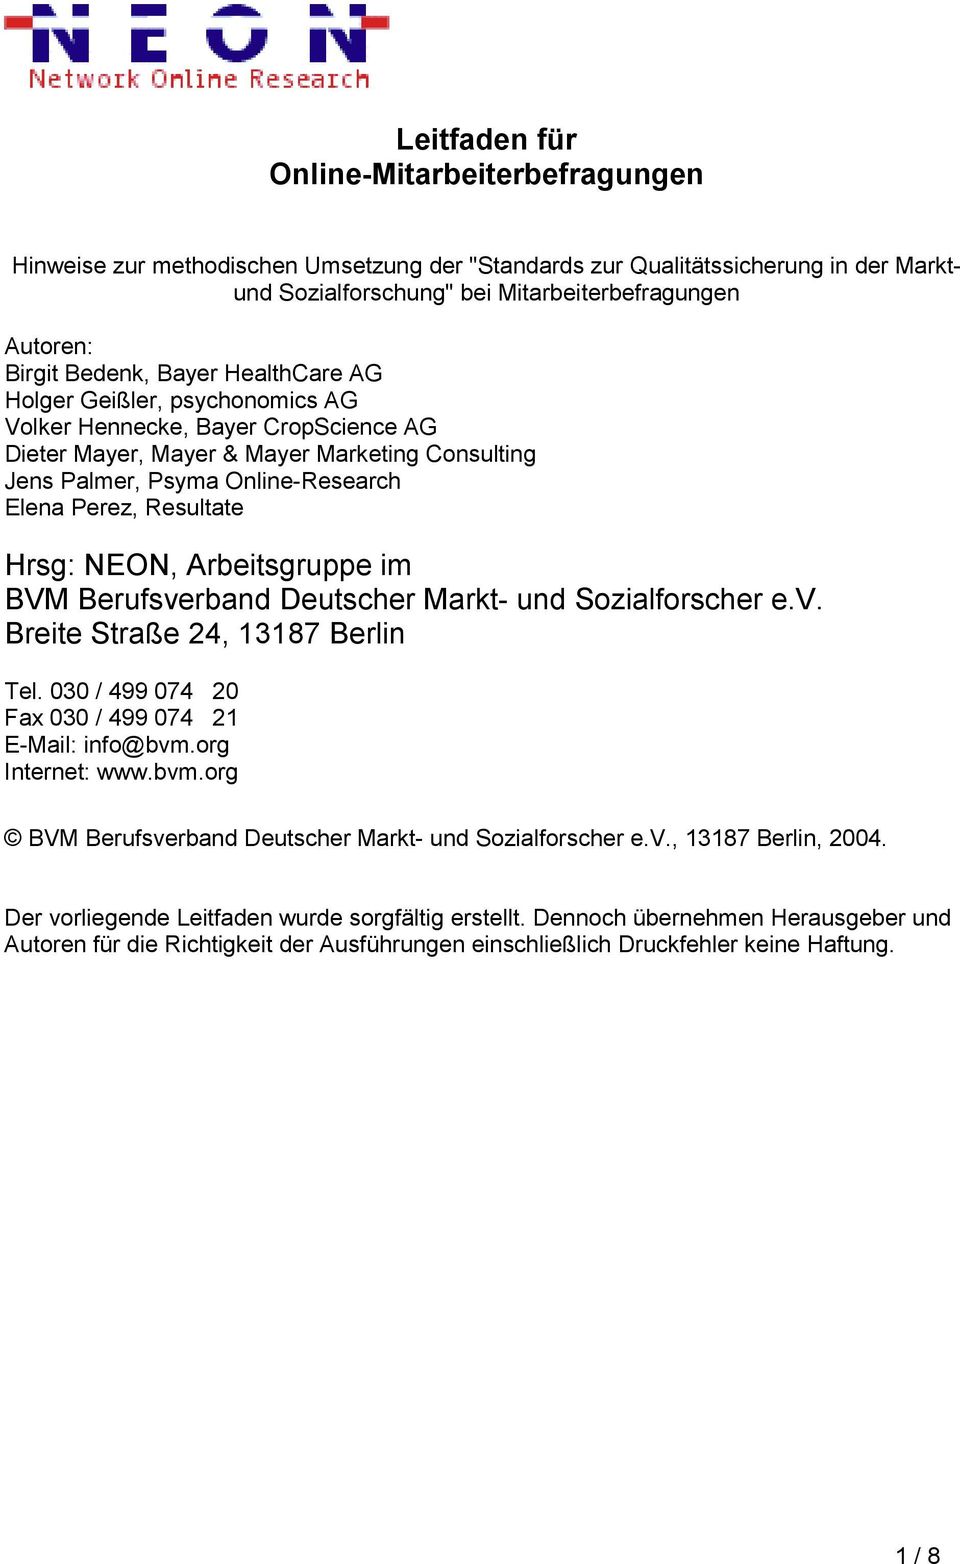 Resultate Hrsg: NEON, Arbeitsgruppe im BVM Berufsverband Deutscher Markt- und Sozialforscher e.v. Breite Straße 24, 13187 Berlin Tel. 030 / 499 074 20 Fax 030 / 499 074 21 E-Mail: info@bvm.